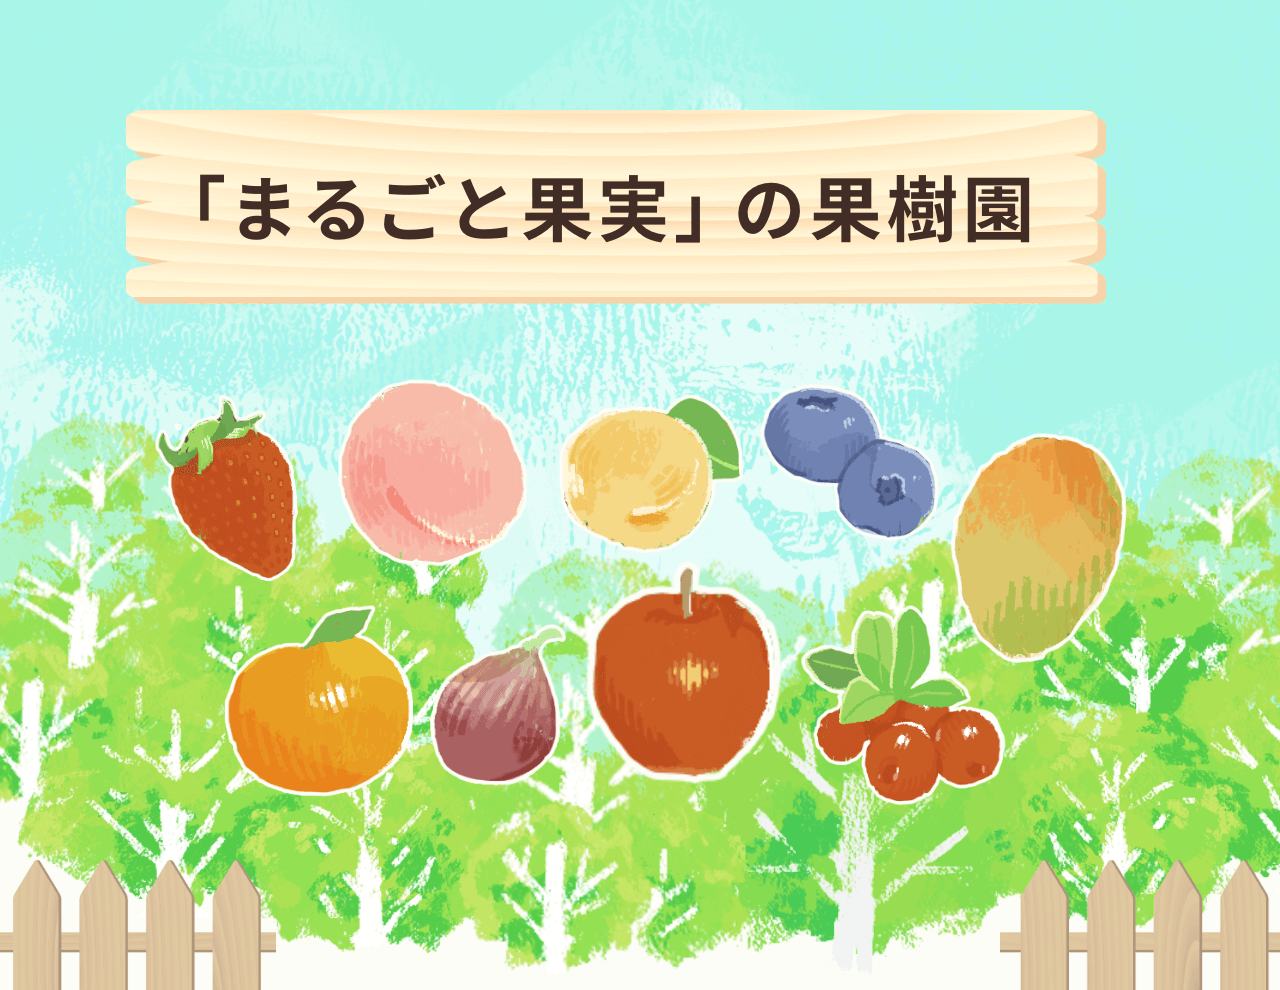 「まるごと果実」の果樹園